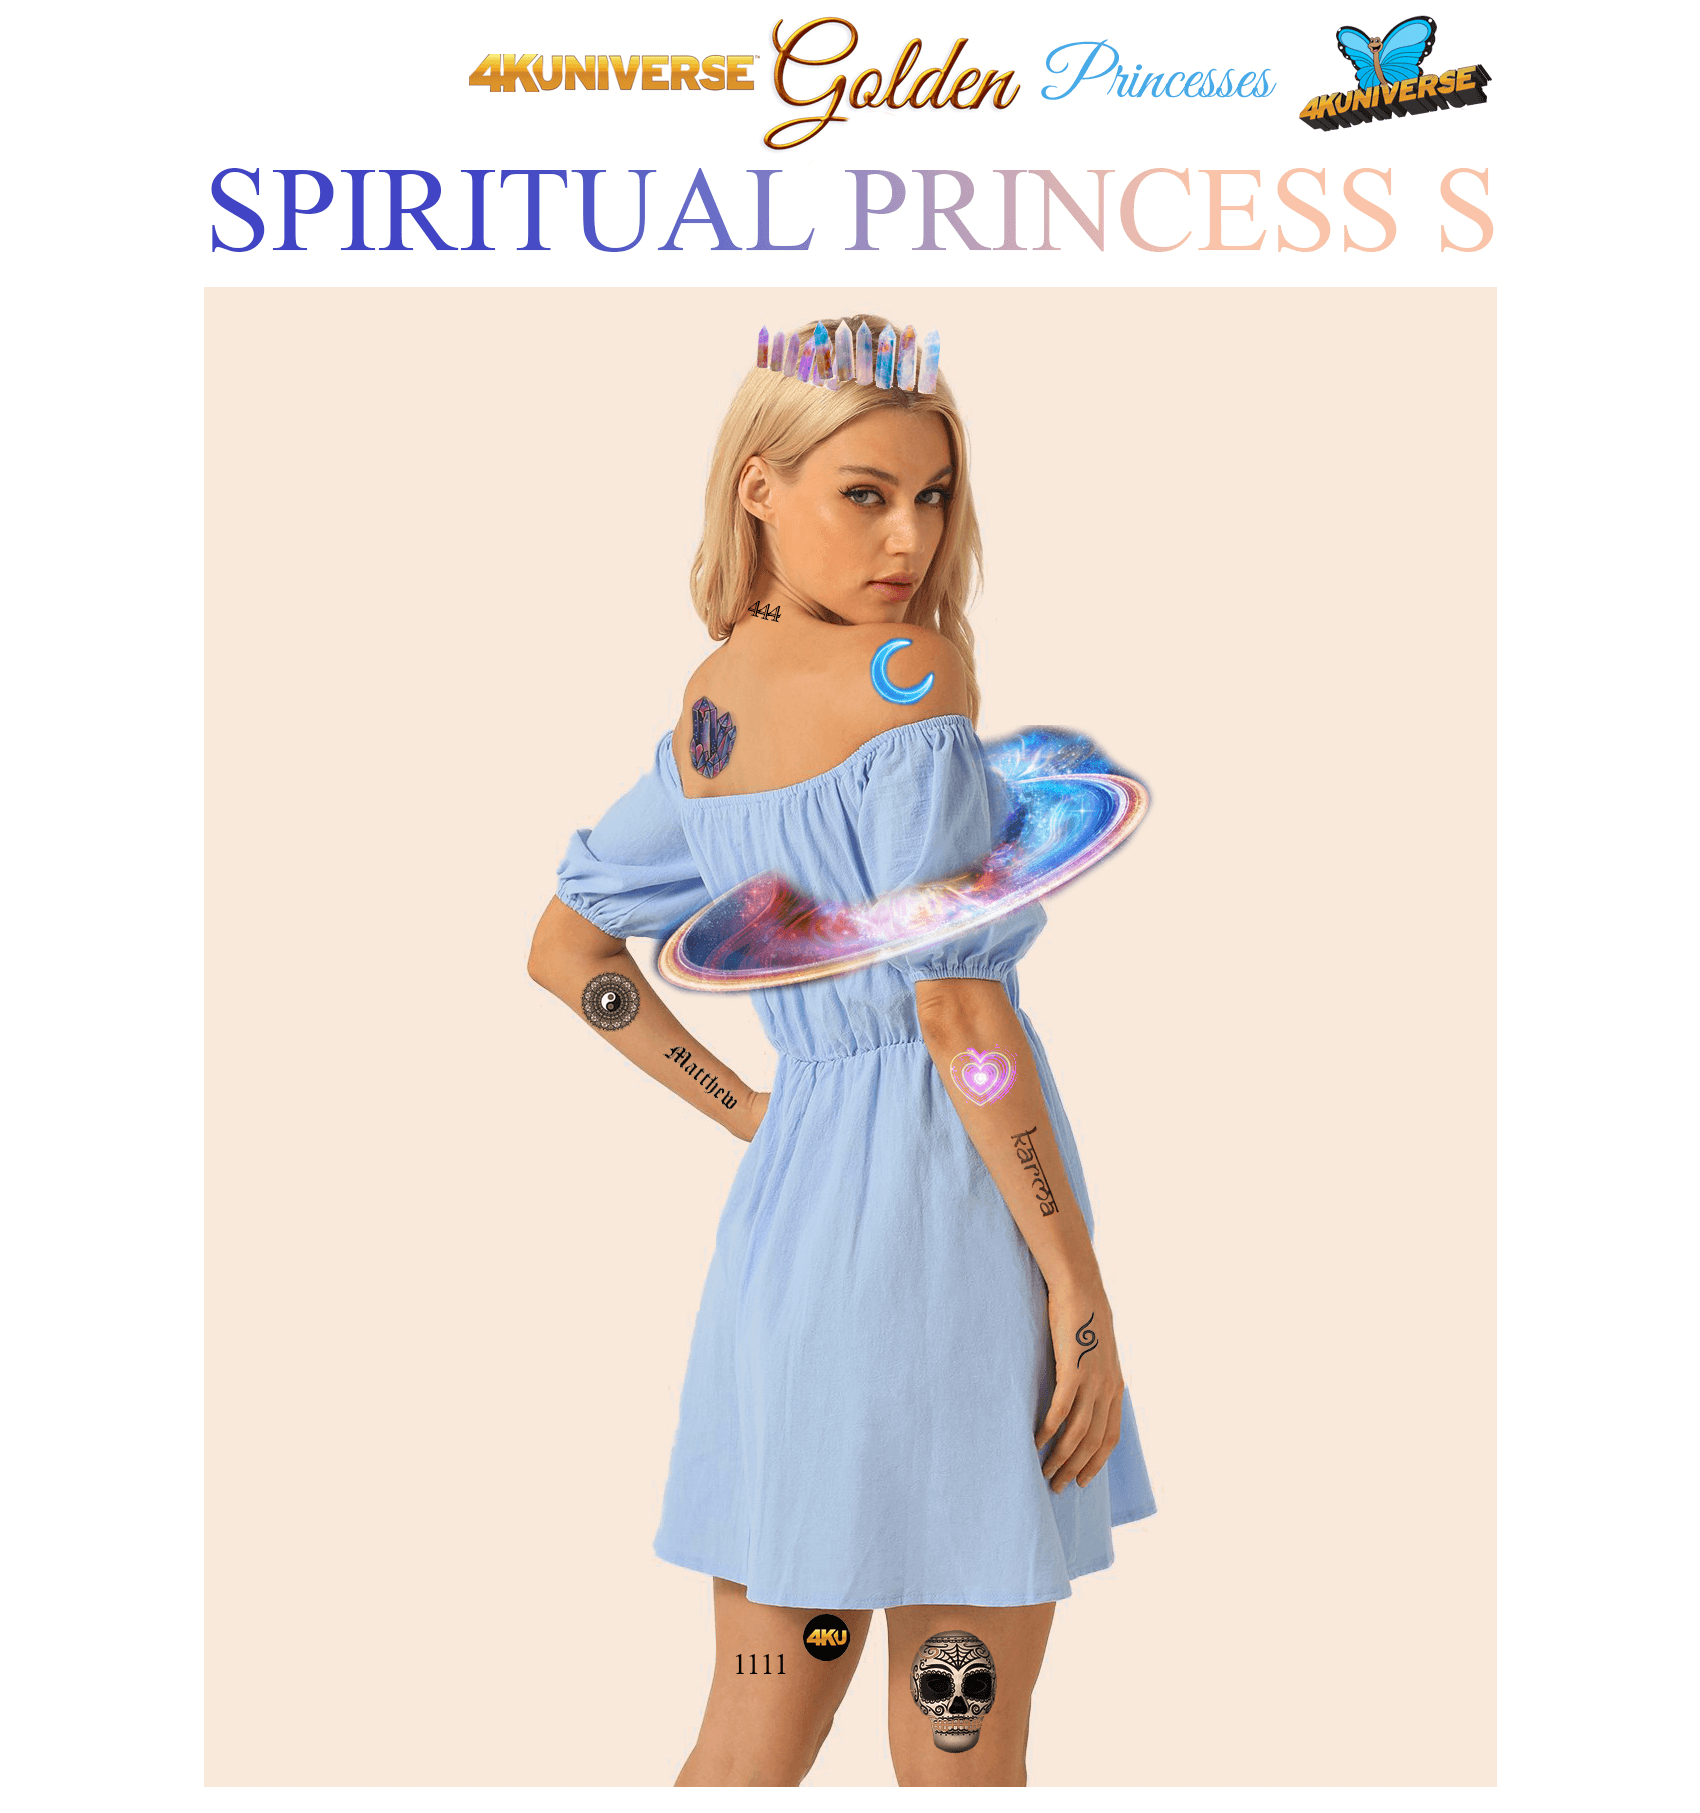 Spiritual Princess S